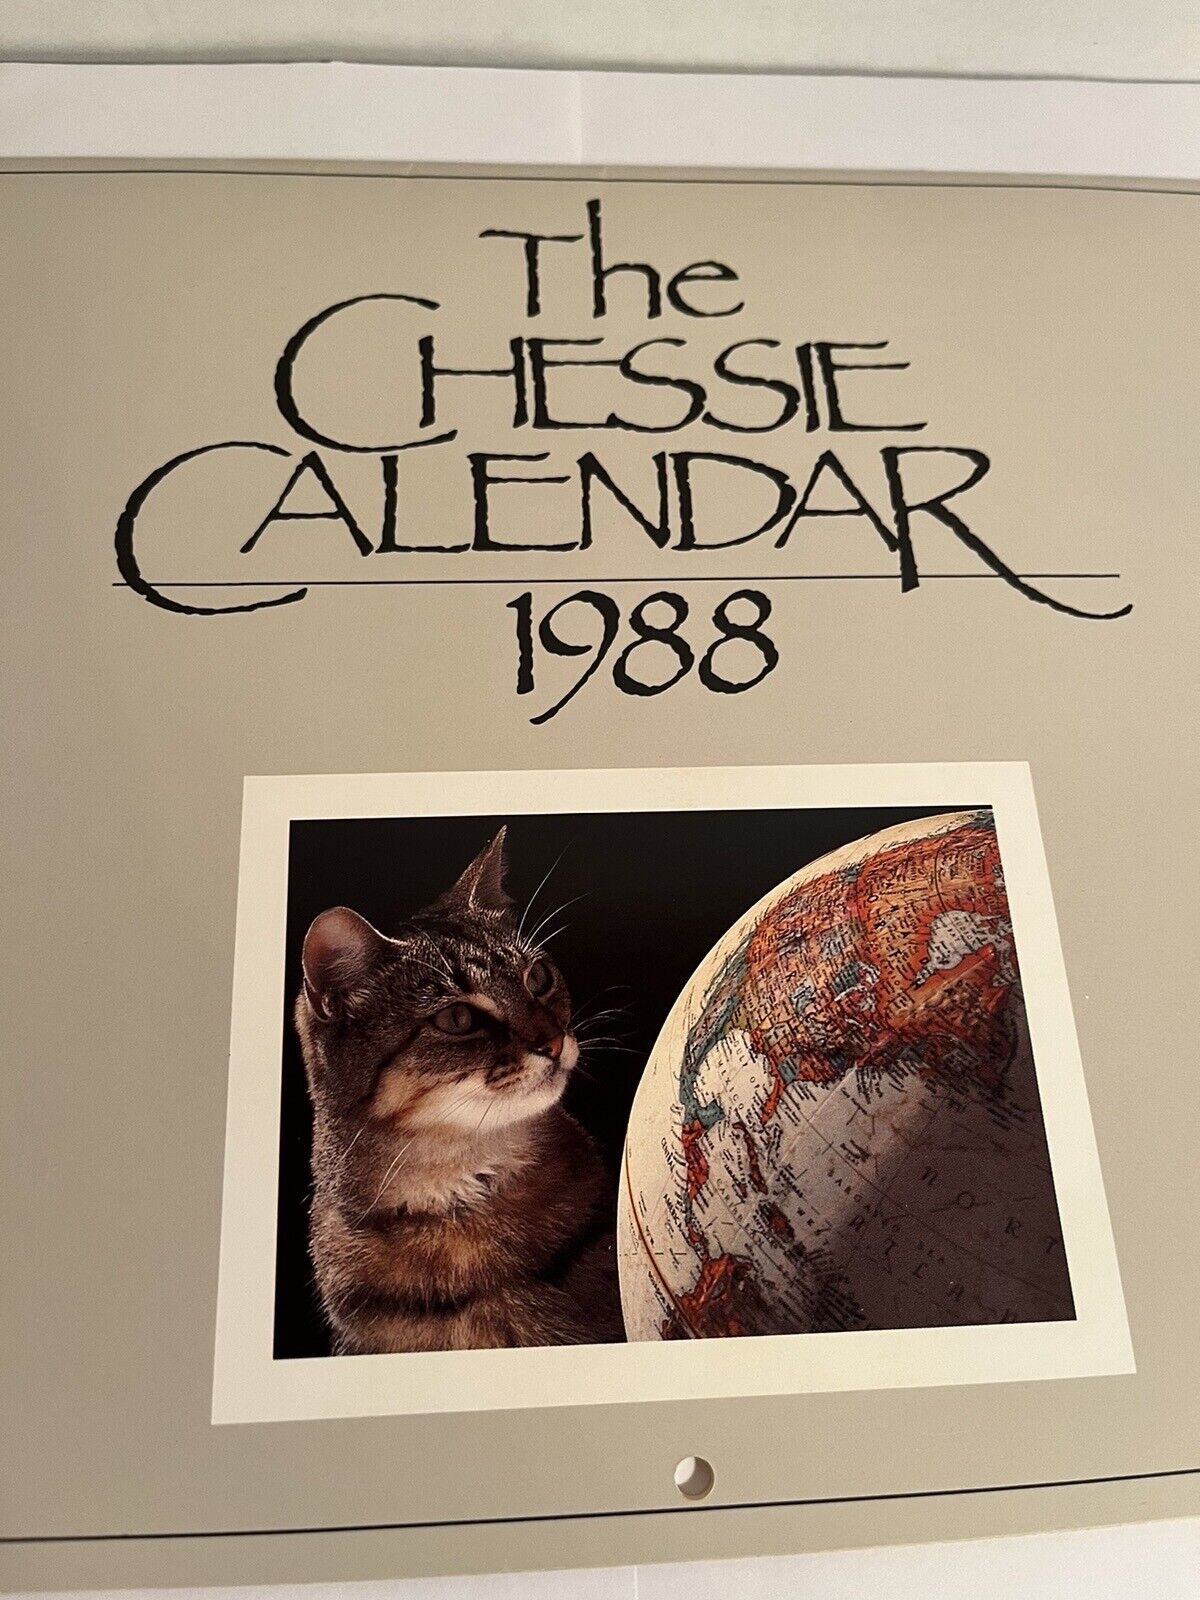 The Chessie Calendar 1988 CSX Railroad Cat